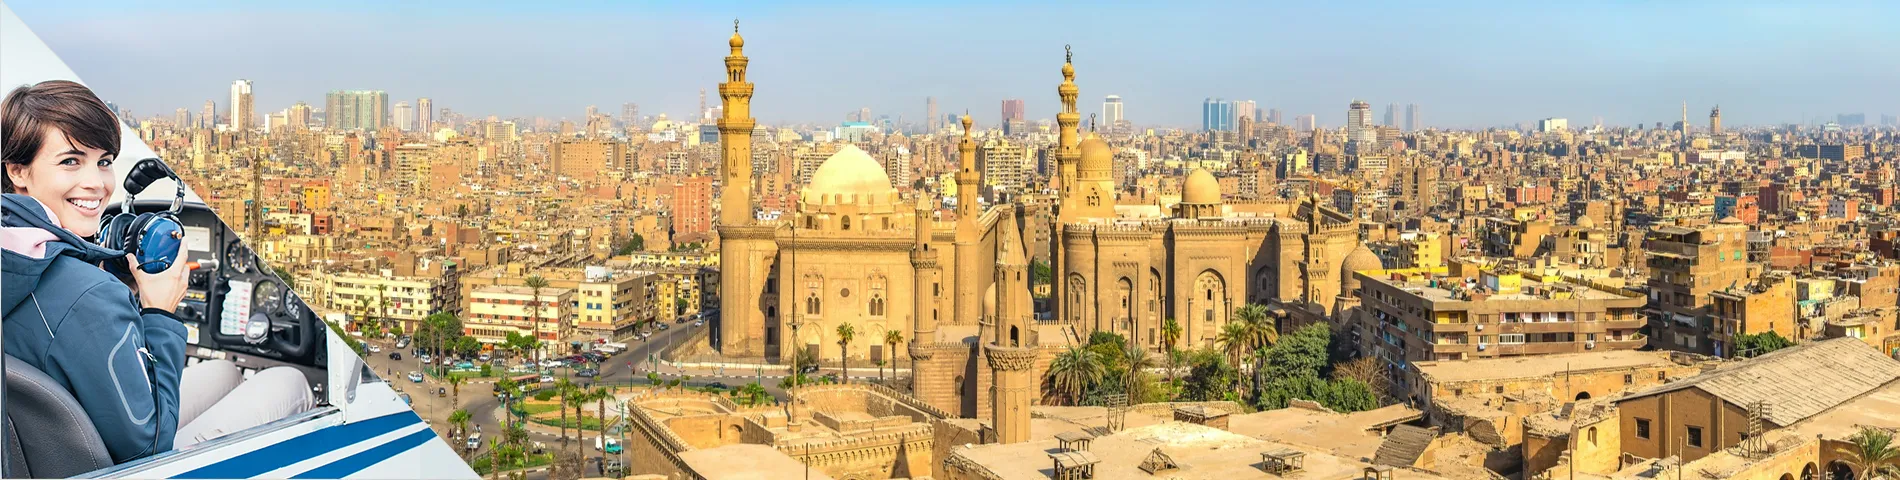 Cairo - Árabe para Aviação